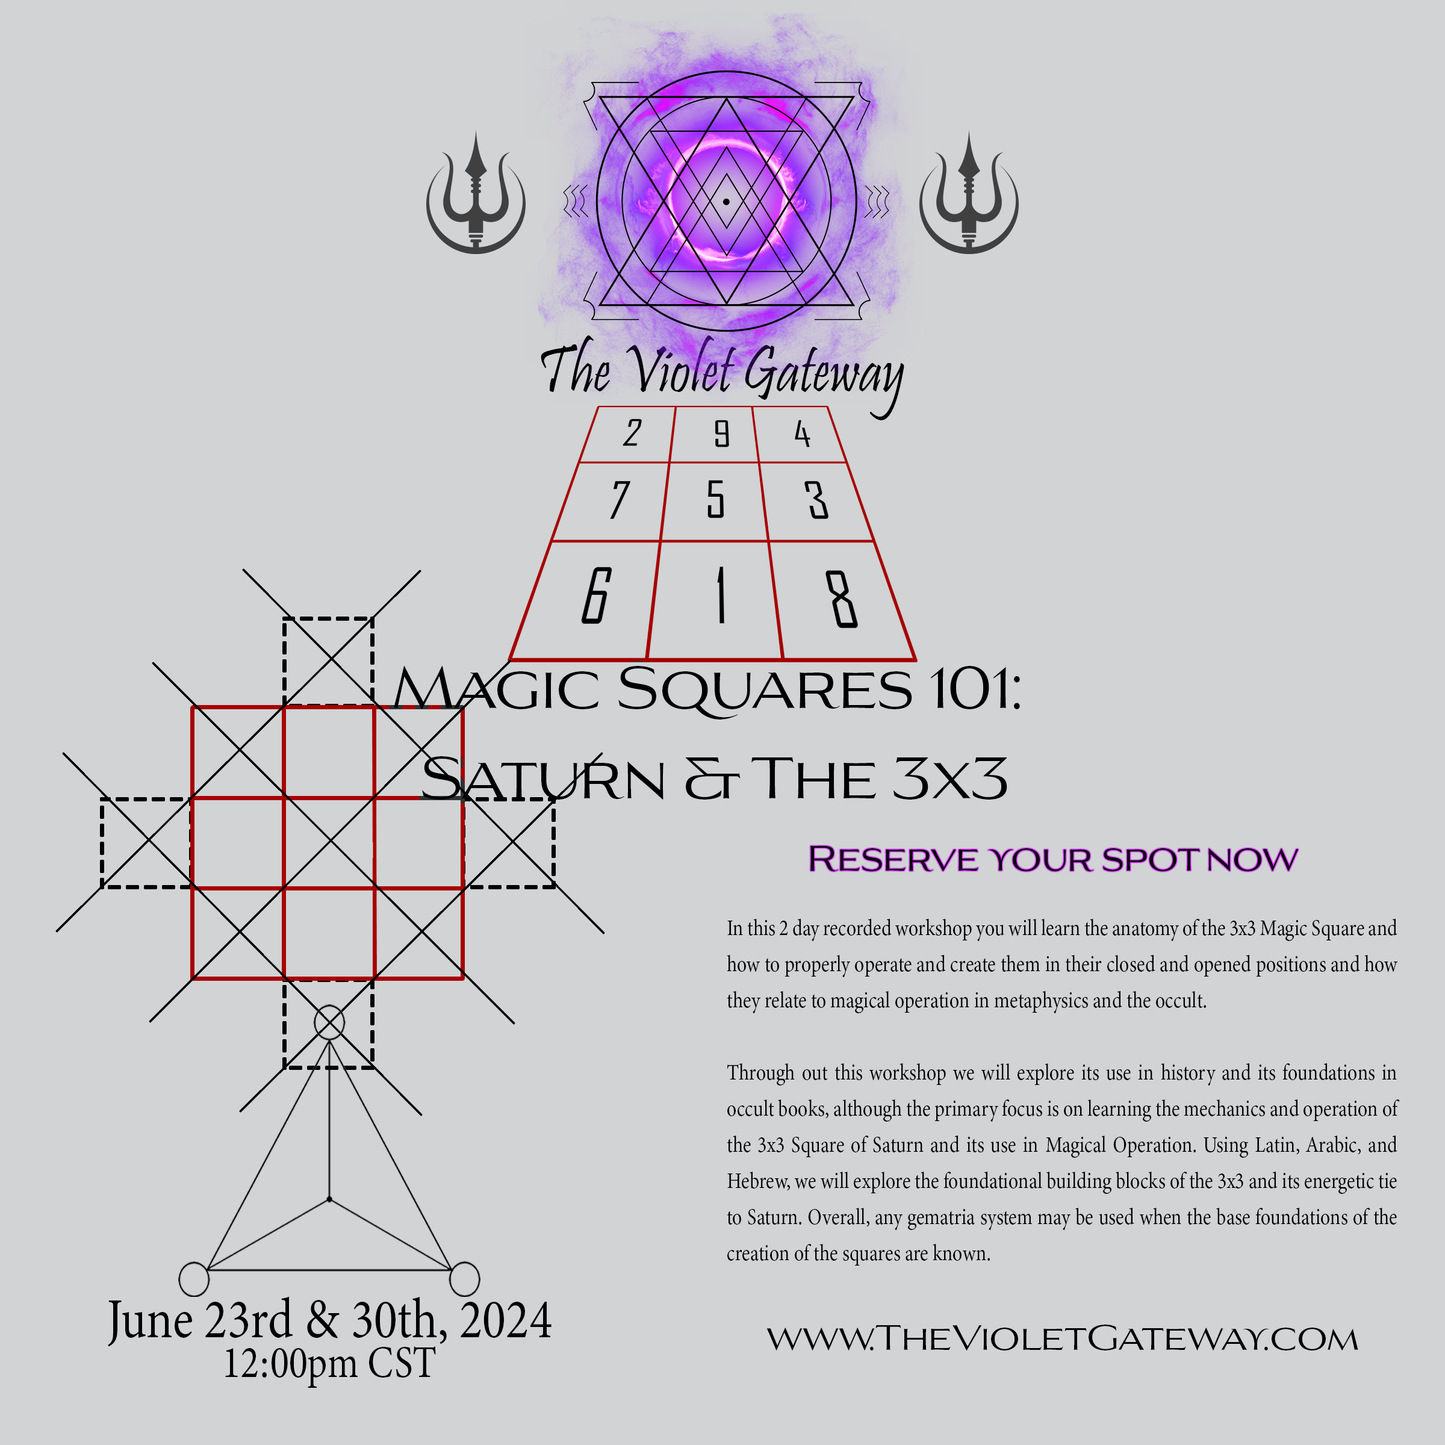 Magic Squares 101: Saturn & the 3x3